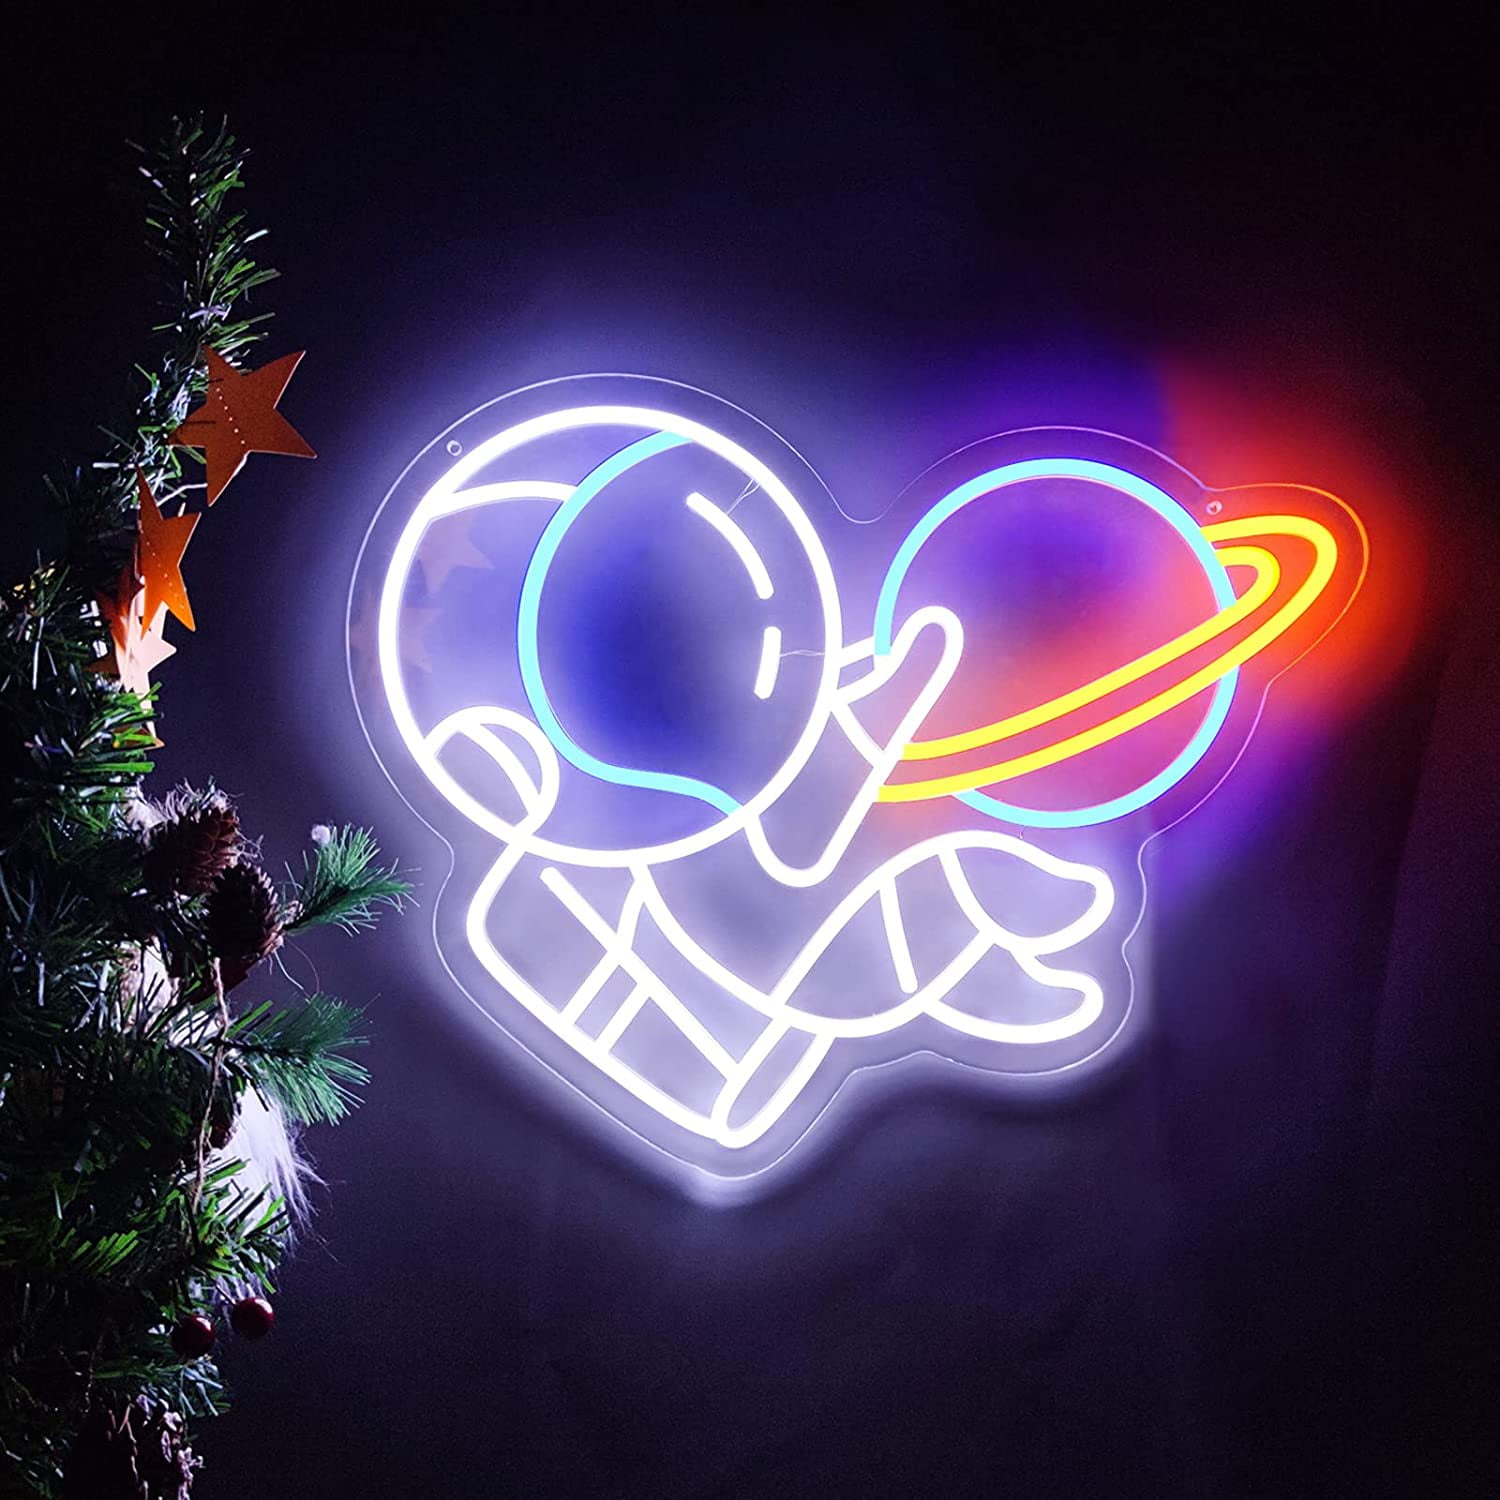 KAWS LED Neon Sign